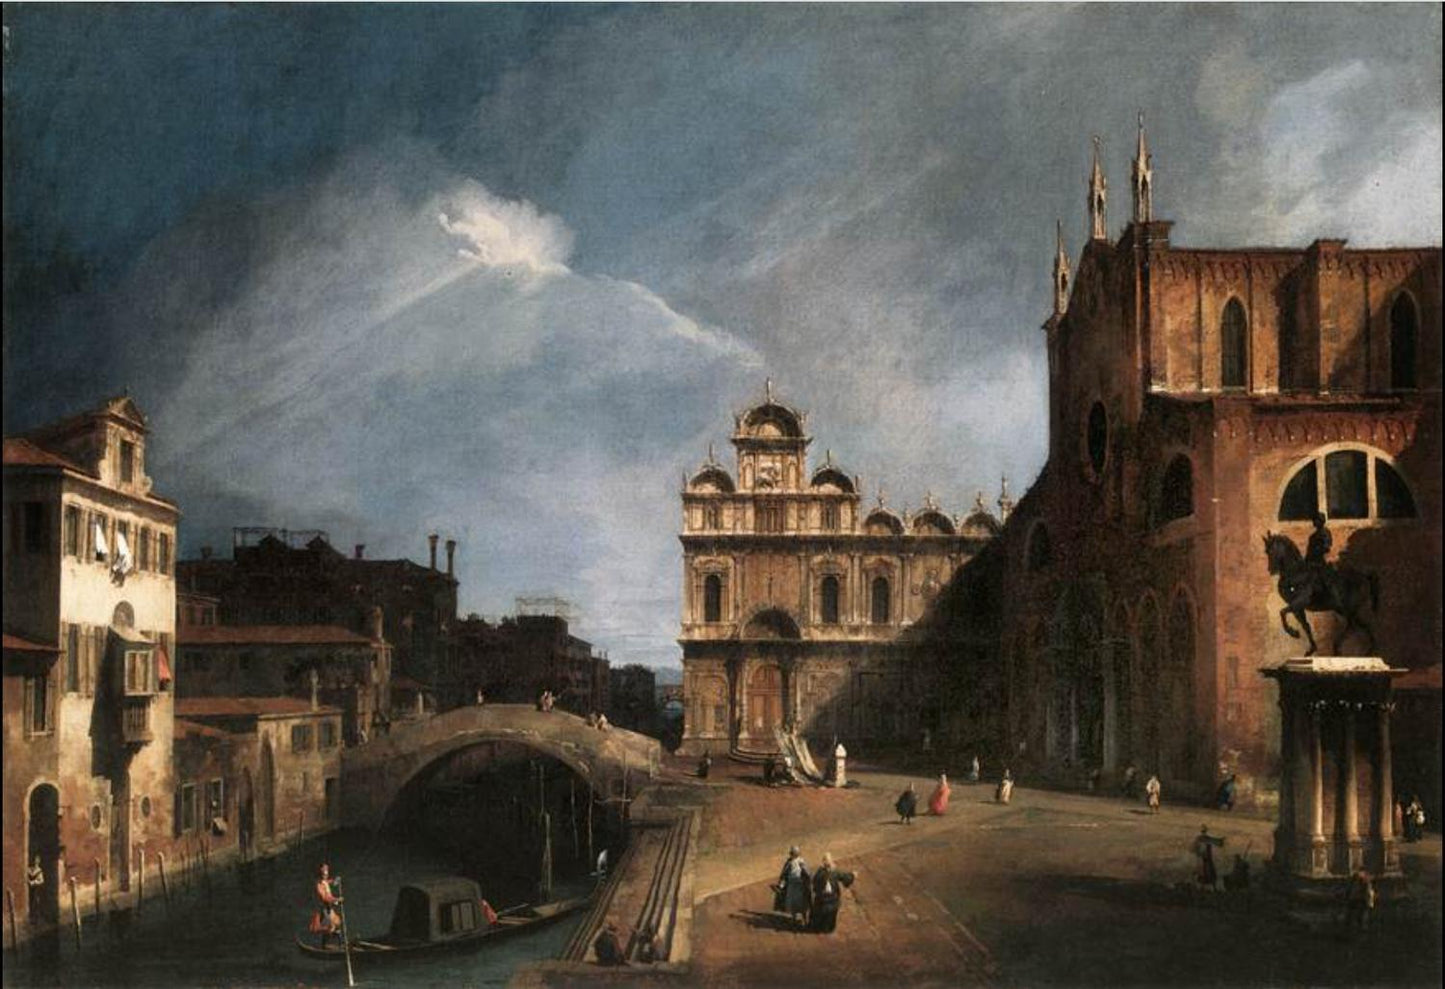 Santi Giovanni e Paolo the Scuola di San Marco, Canaletto